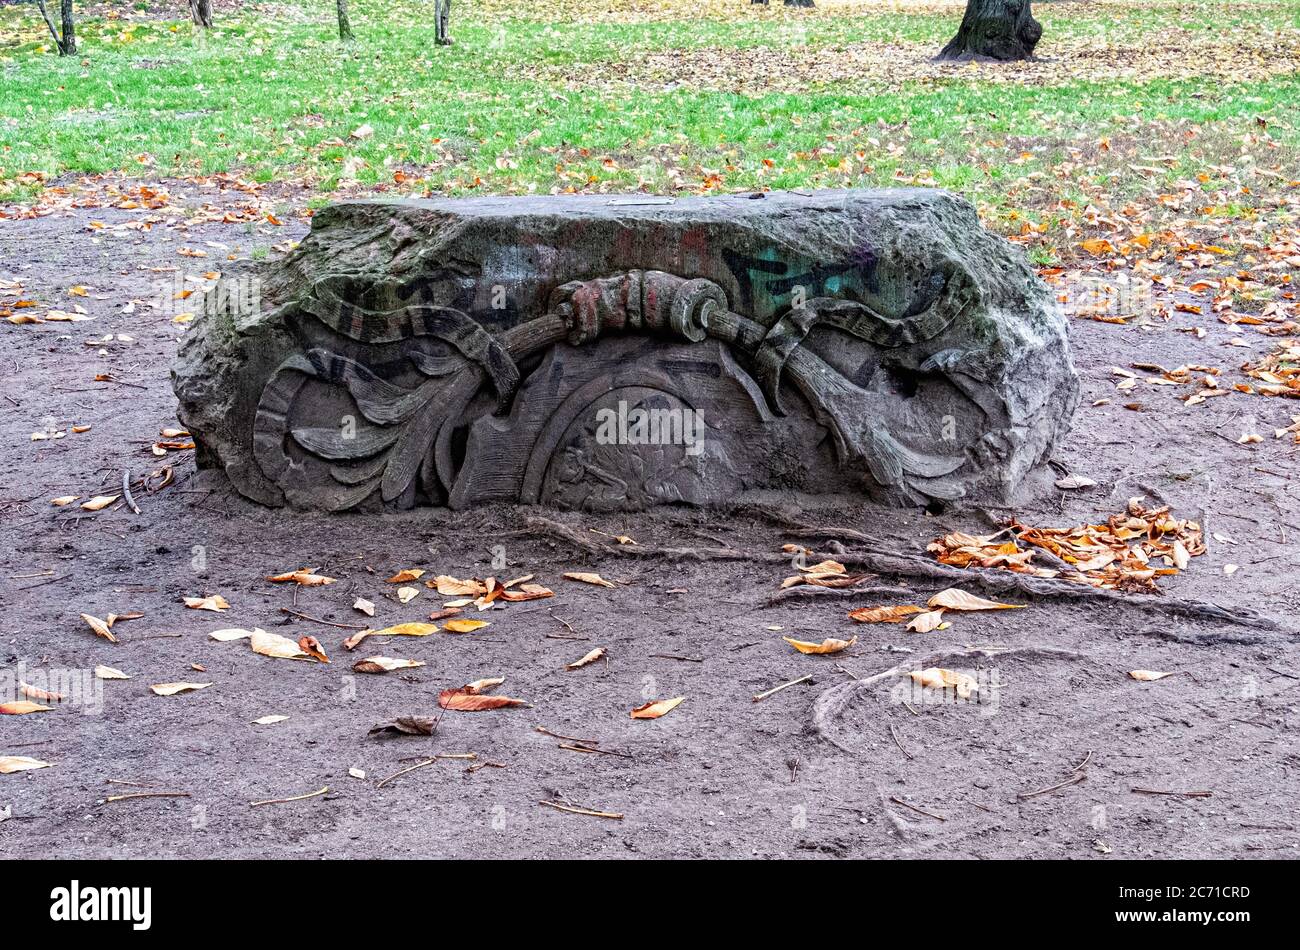 Frammento architettonico trovato nel Parco Monbijou mentre scavando per fare parco. Mitte, Berlino, Germania. Il palazzo Monbijou era su questo sito Foto Stock